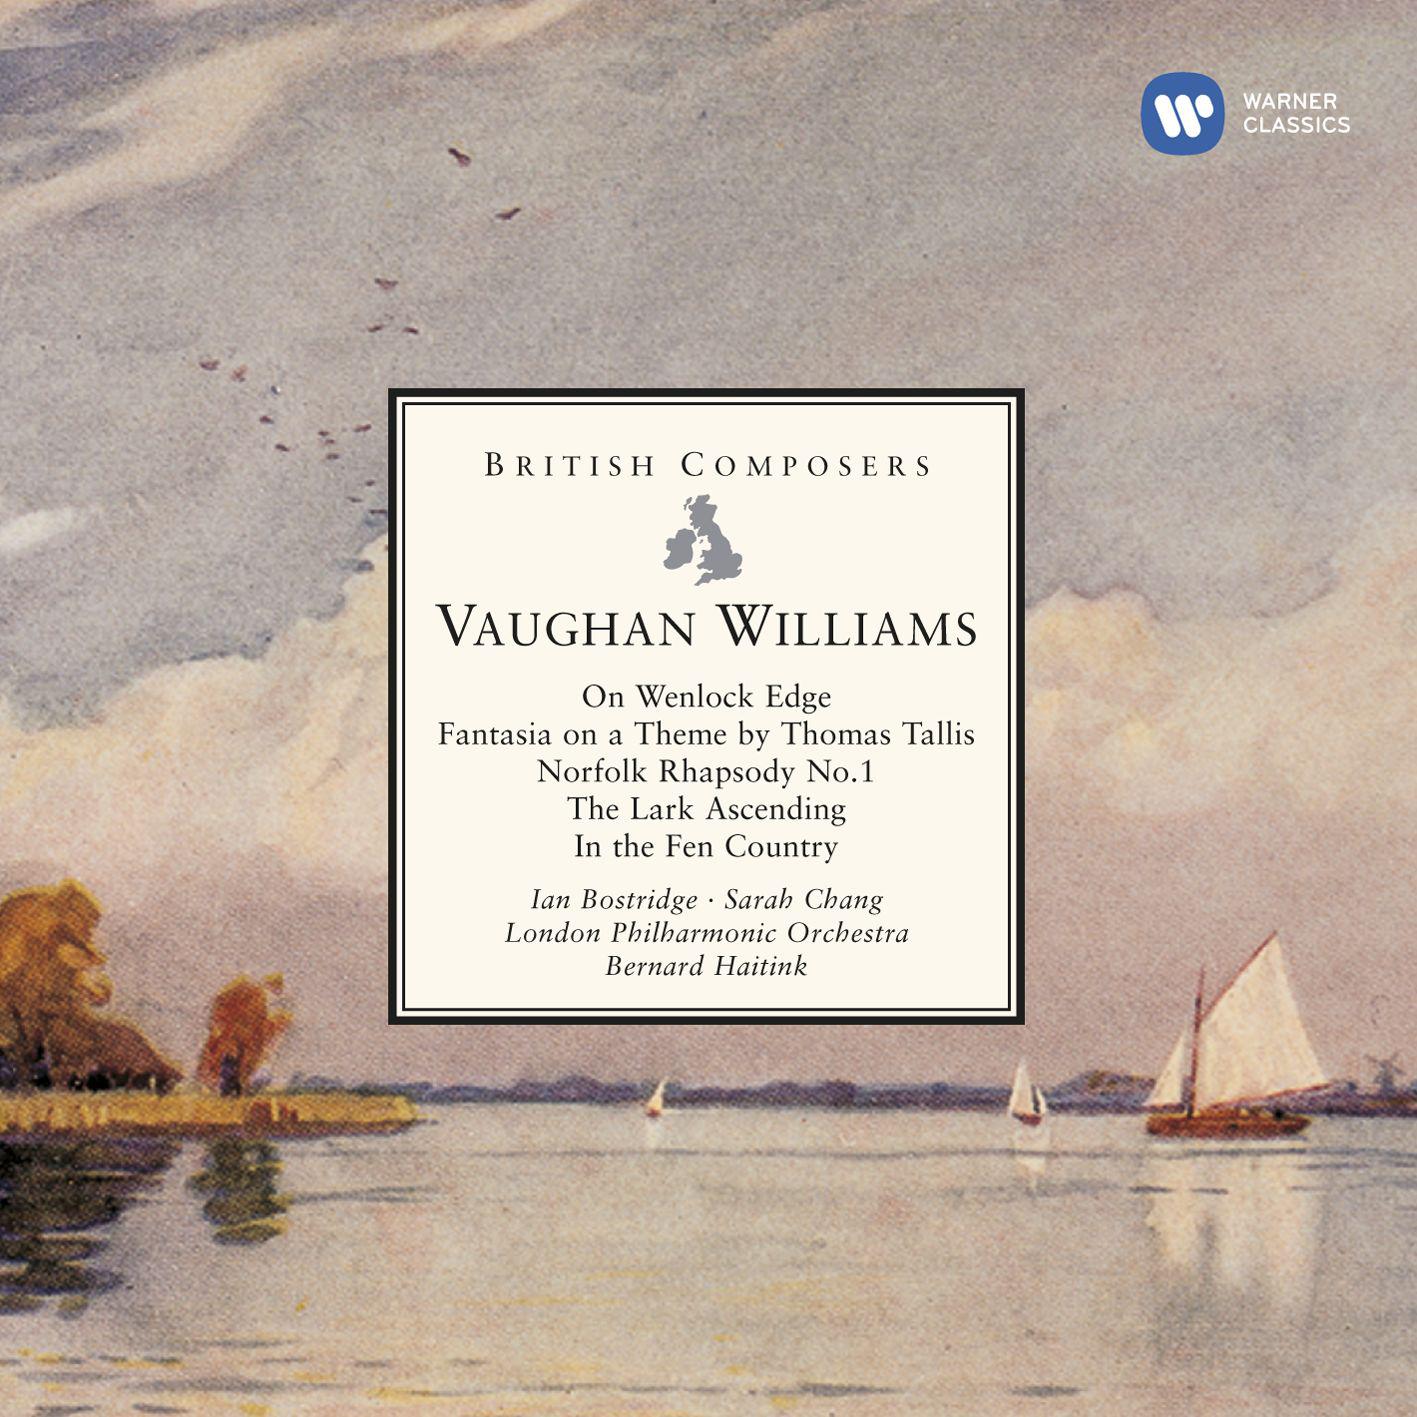 Vaughan Williams On Wenlock Edge, Fantasia on a Theme by Thomas Tallis etc